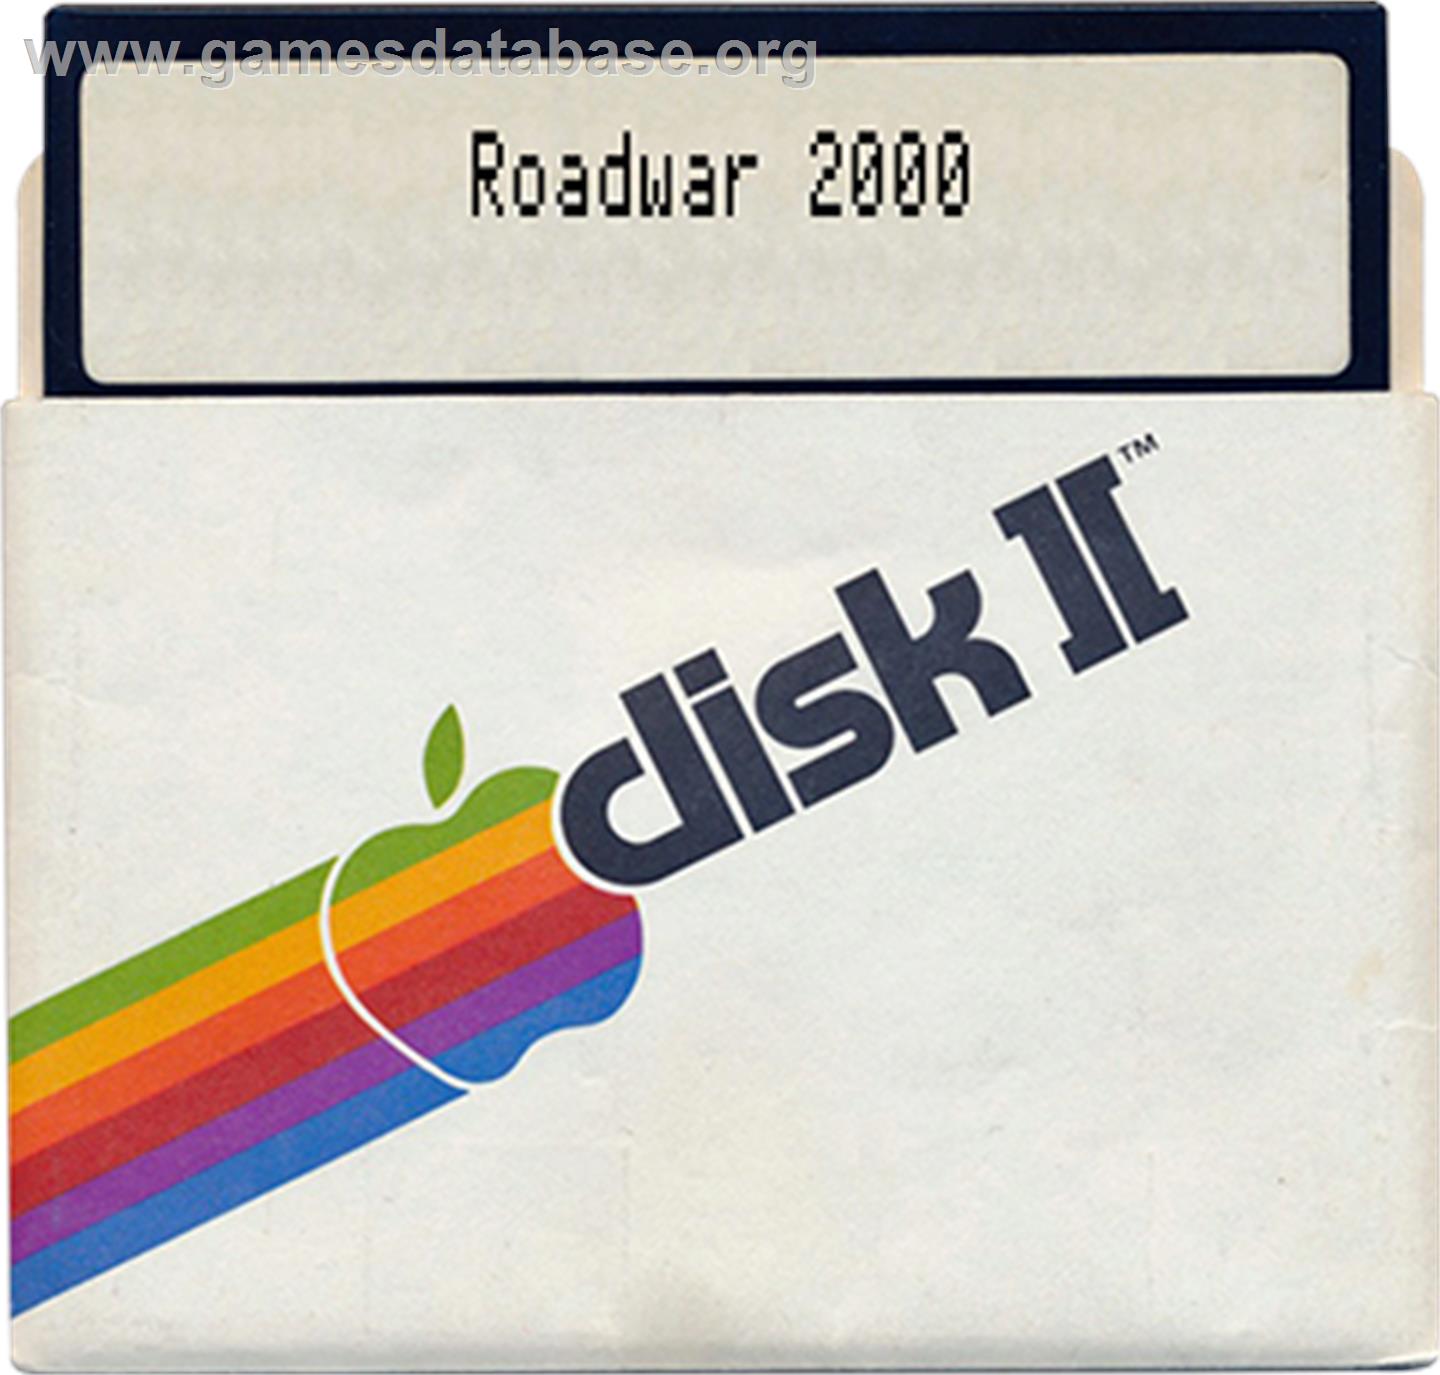 Roadwar 2000 - Apple II - Artwork - Disc